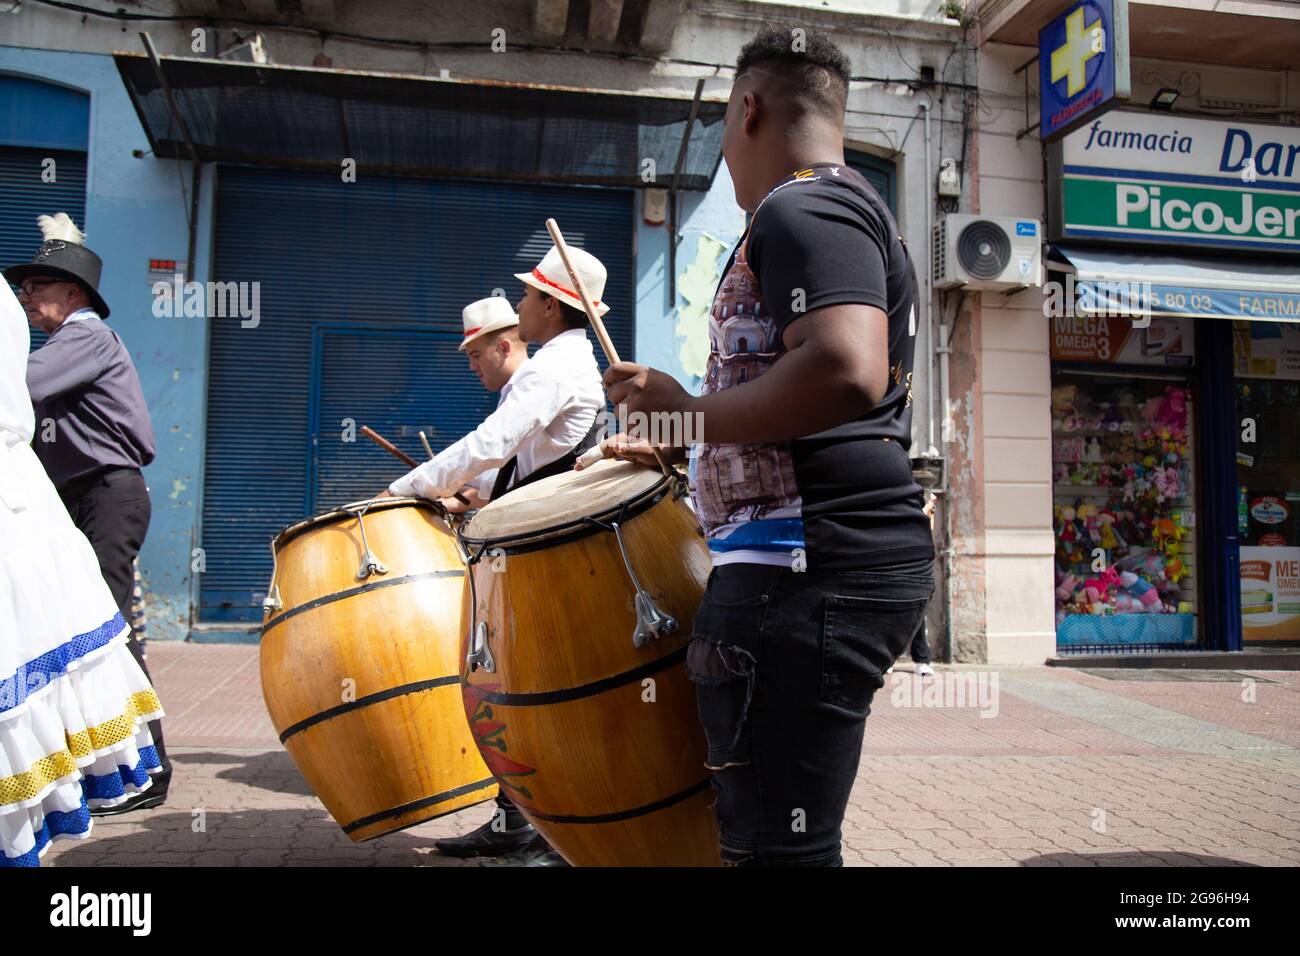 Percussionnistes jouant des tambours de Candombe. Montevideo, Uruguay Banque D'Images